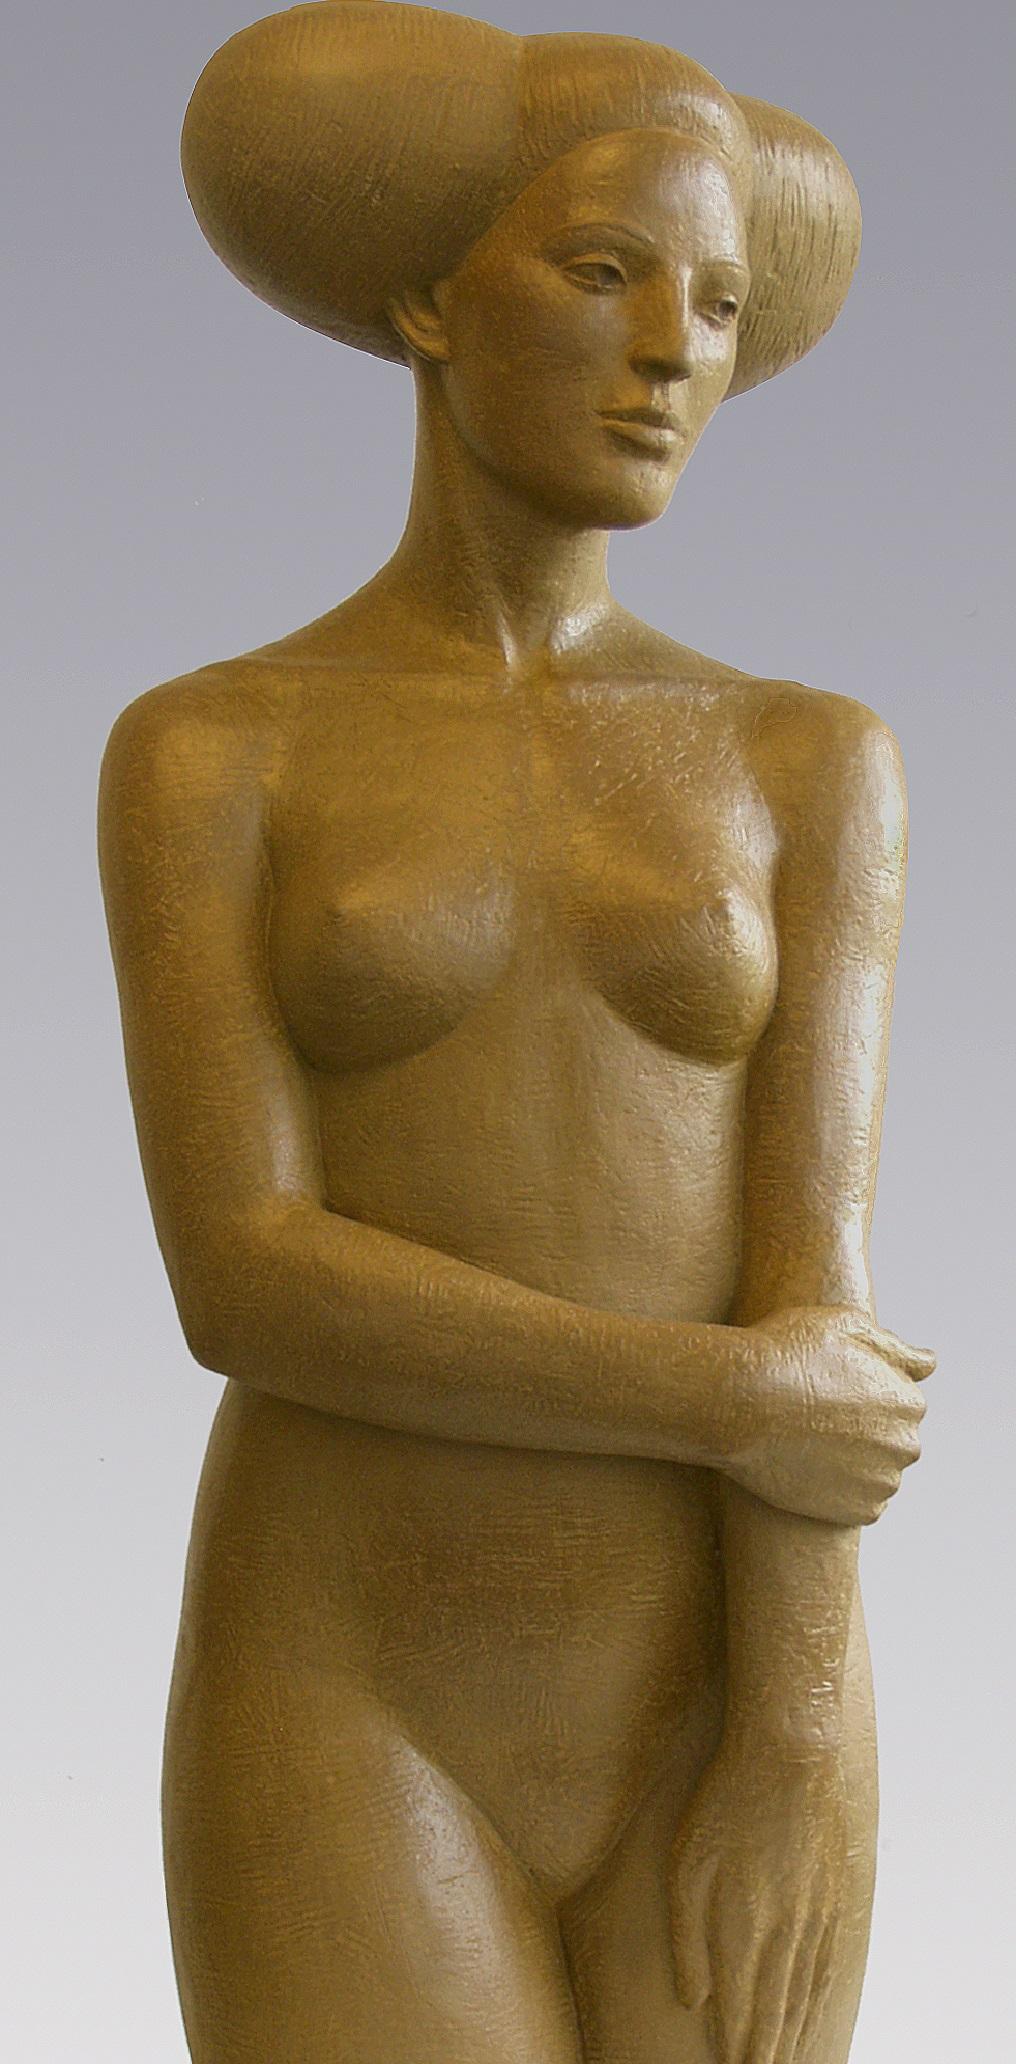 Uma Lady Bronze Sculpture Contemporaine Femme Nue Femme Contemporaine
Les statues d'Erwin Meijer sont subtiles avec une écriture reconnaissable et personnelle.
Ils respirent l'atmosphère d'un poème narratif, où le lecteur ne rencontre pas seulement